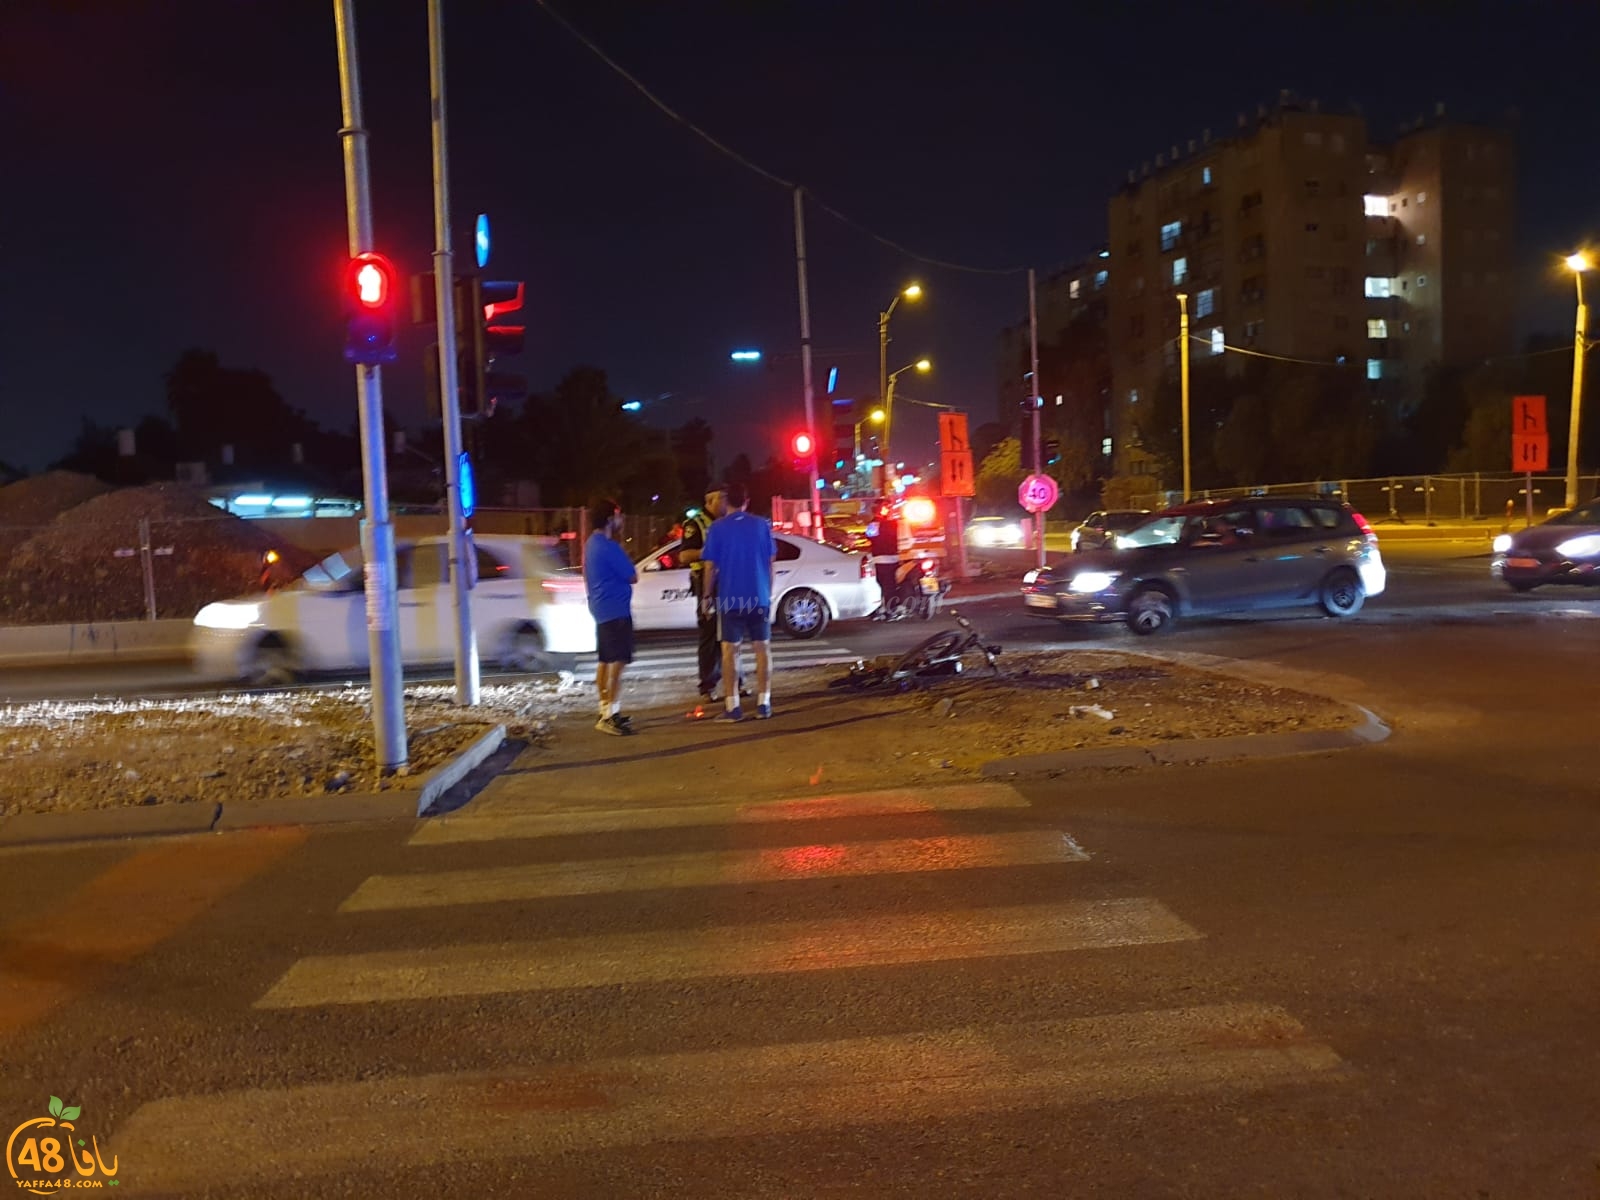  بالصور: اصابة خطرة لفتاة بحادث دهس مروّع في يافا 